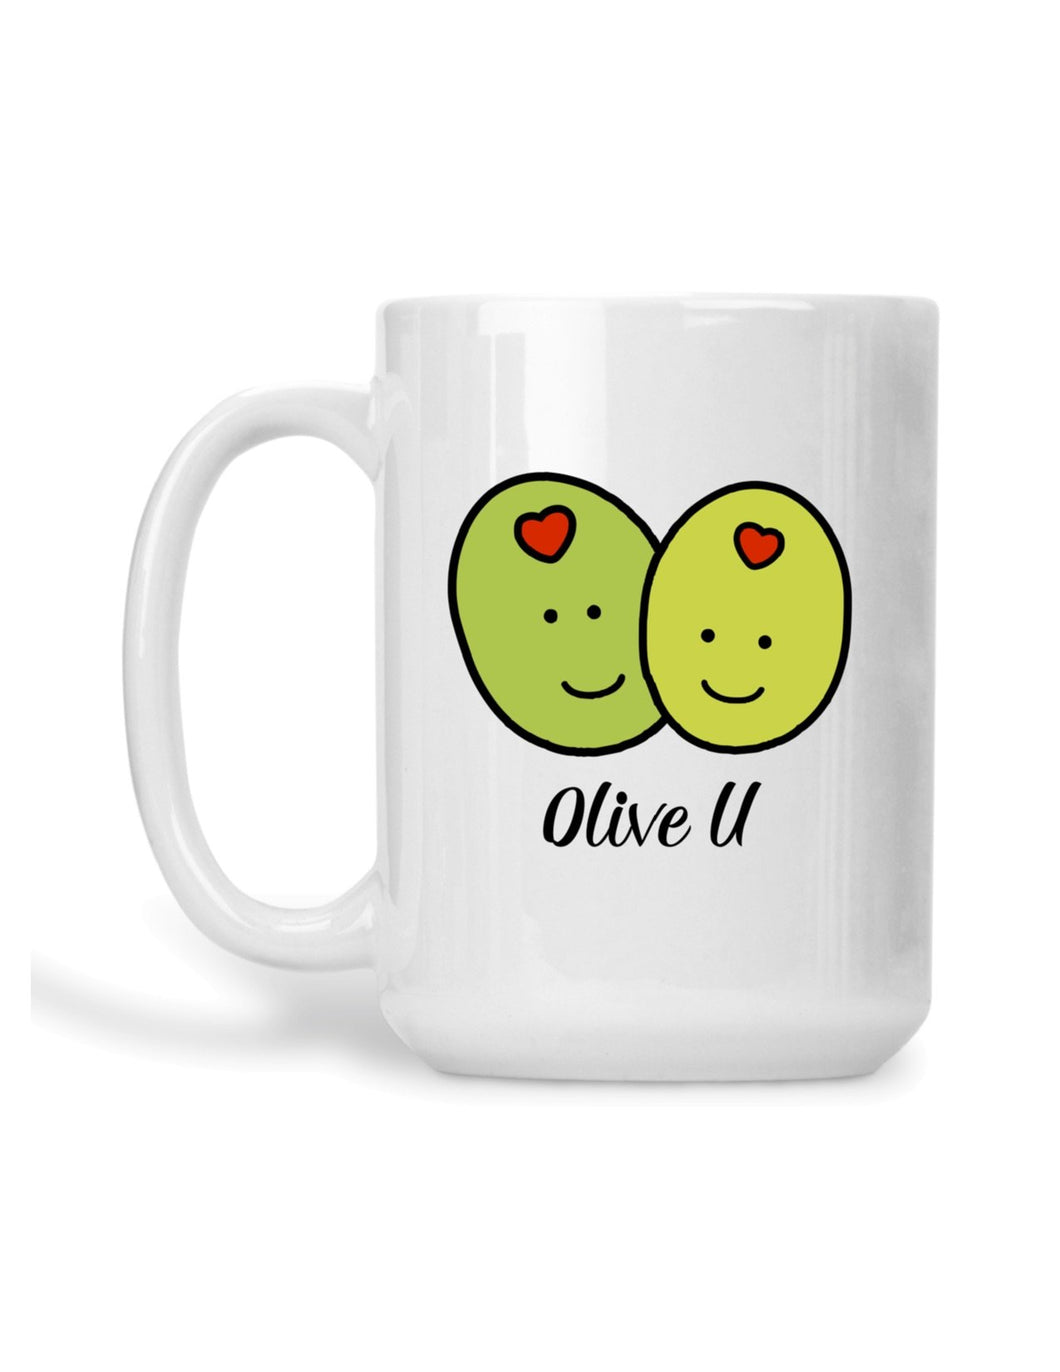 Olive u